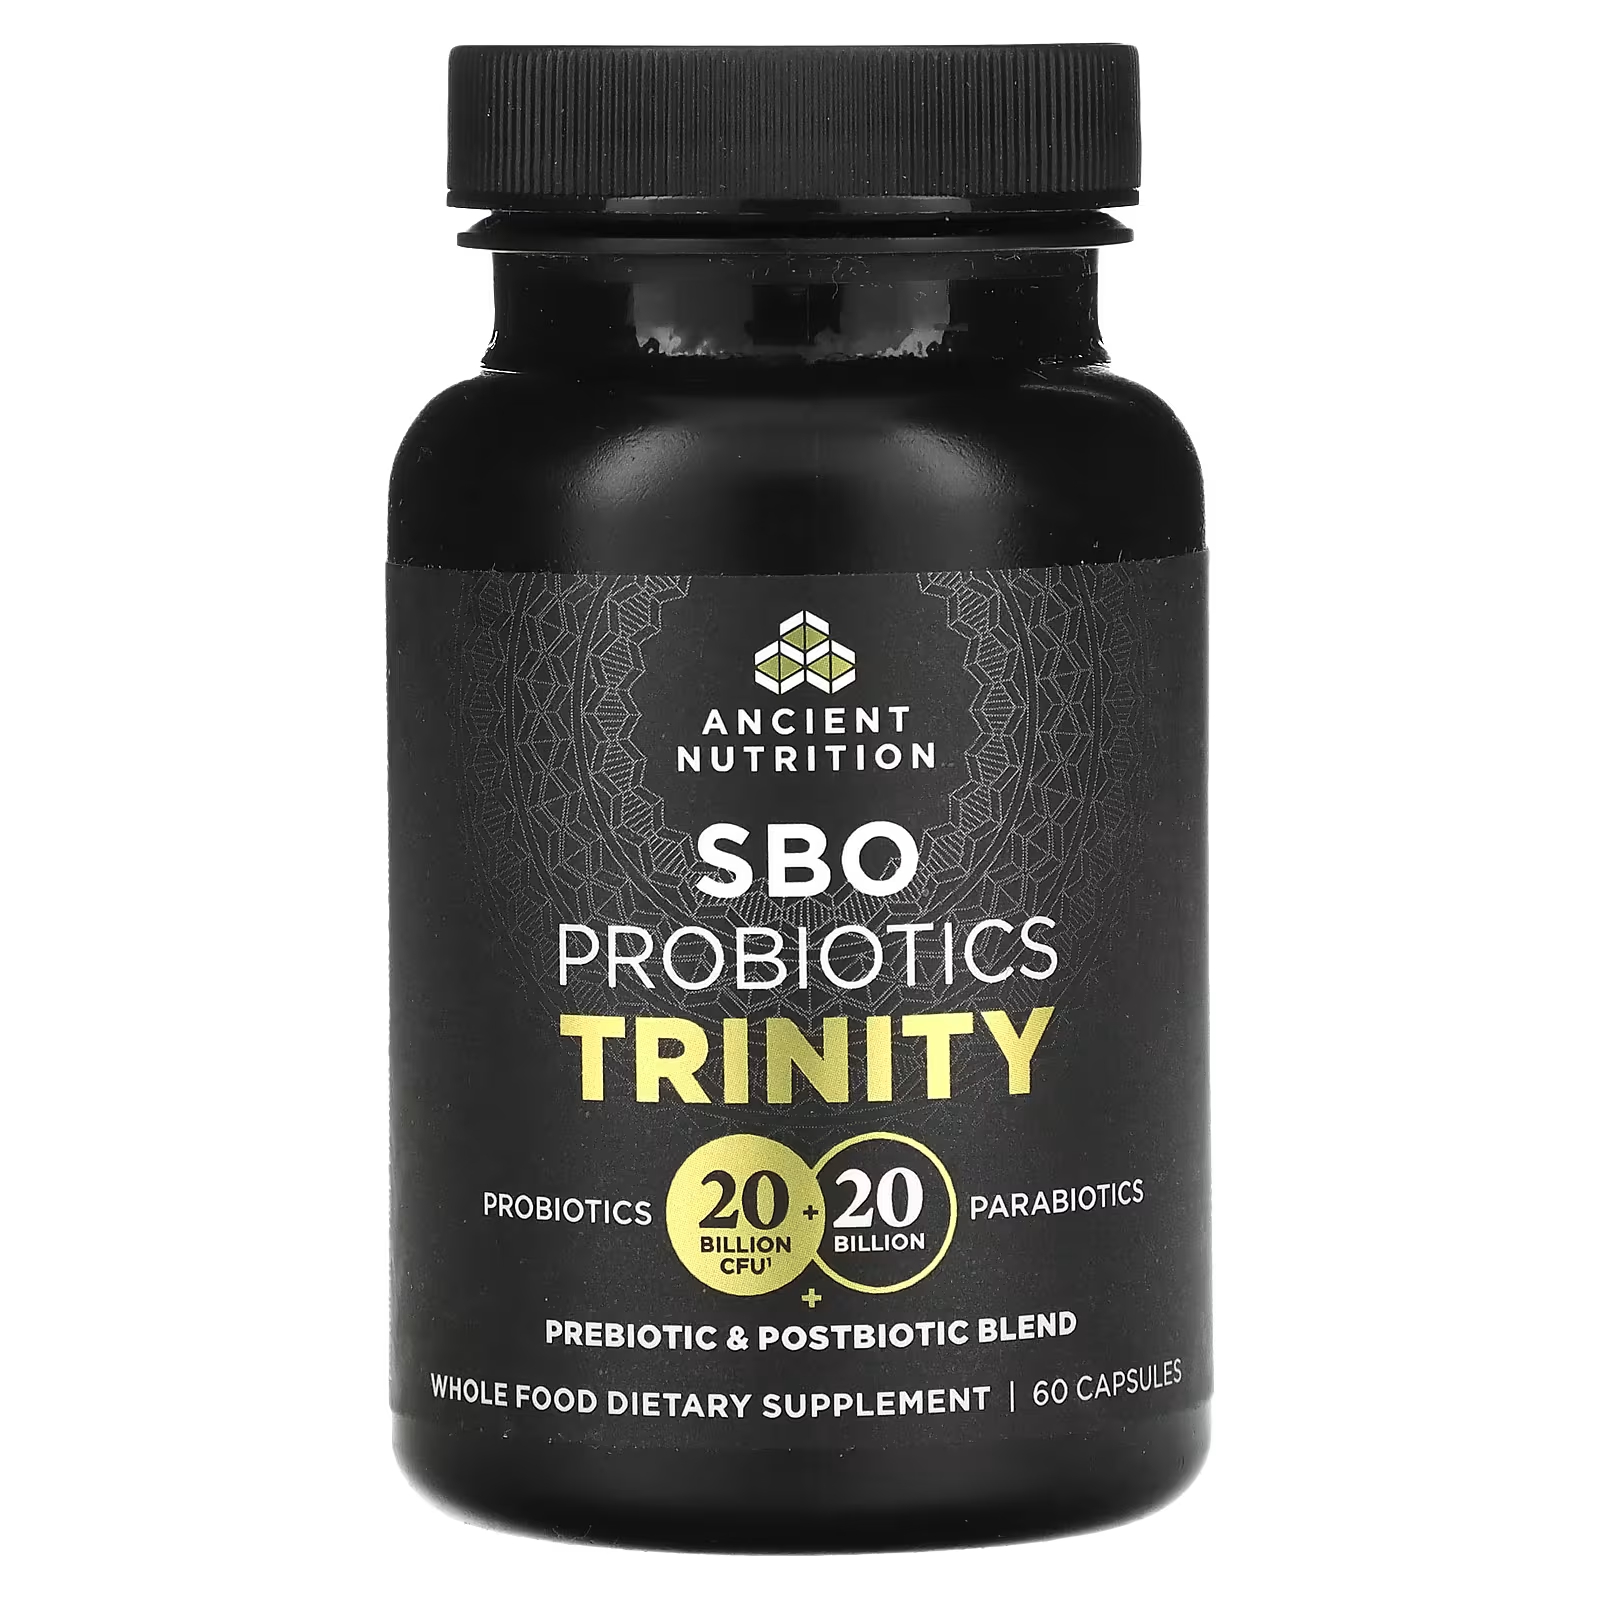 Пробиотик Ancient Nutrition SBO Trinity, 60 капсул culturelle пробиотики повышенная эффективность 20 миллиардов кое 20 вегетарианских капсул для приема один раз в день